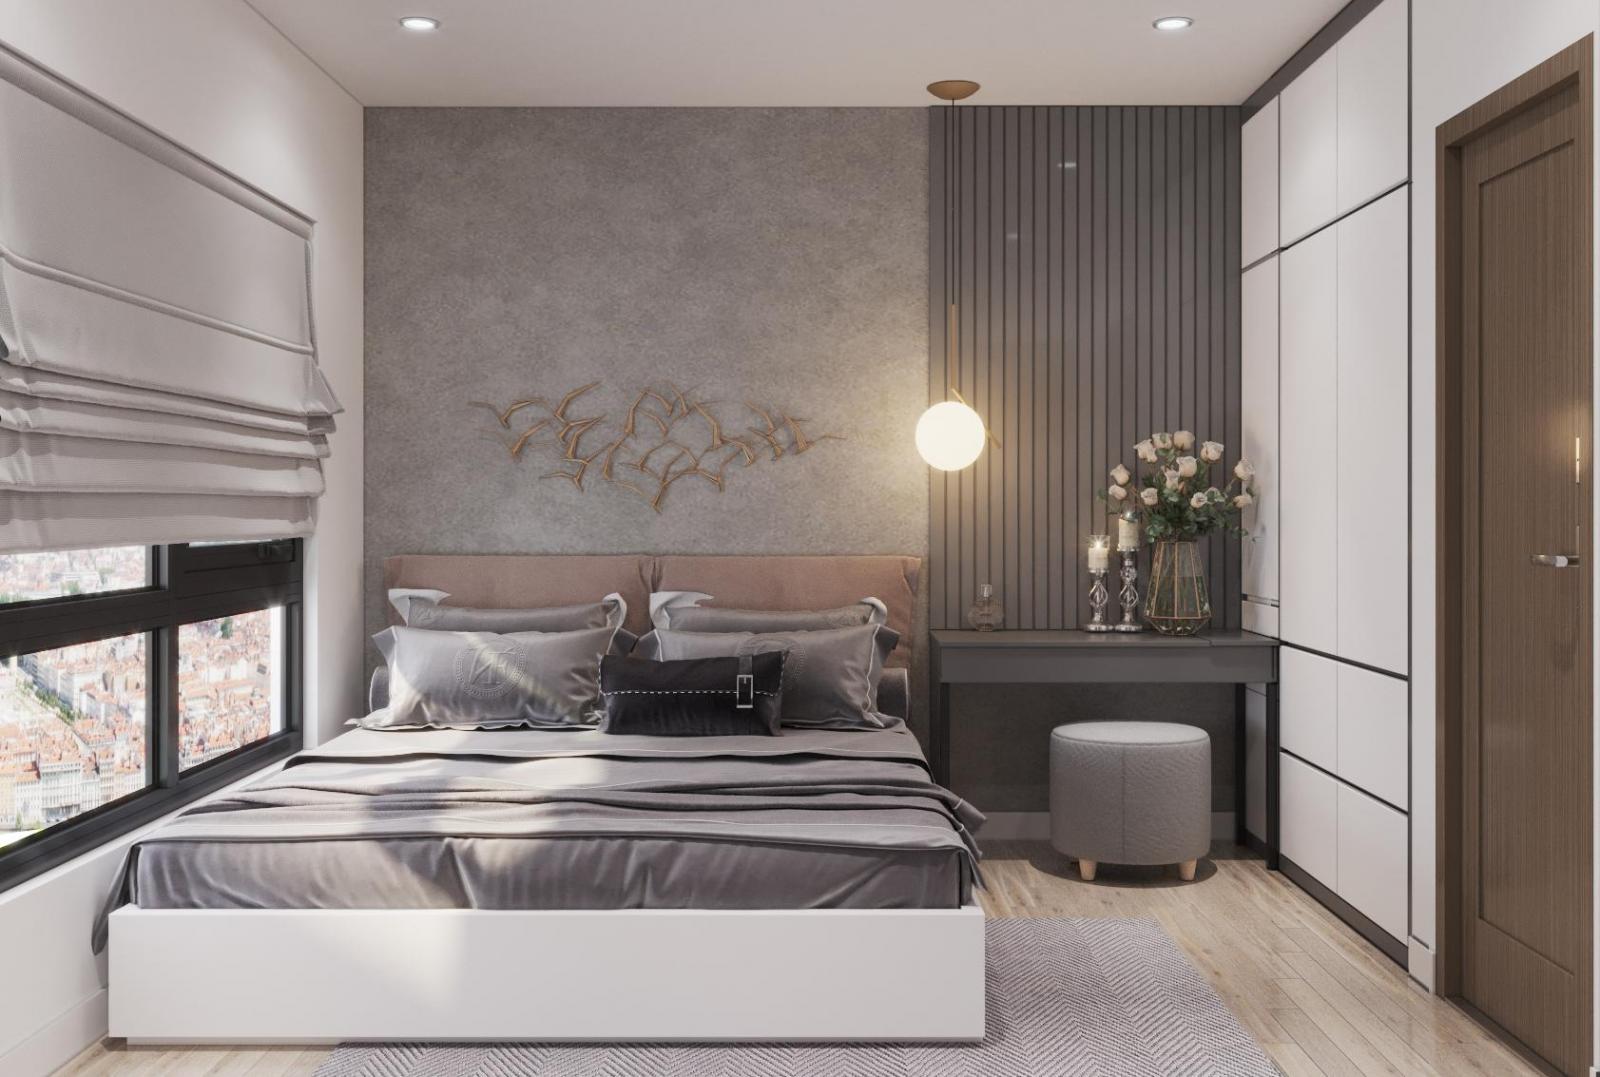 Phòng ngủ nhỏ với thiết kế nội thất tương tự. Rèm cả dày dặn giúp cản nắng, cách nhiệt hiệu quả, đồng thời đảm bảo tính riêng tư thiết yếu.